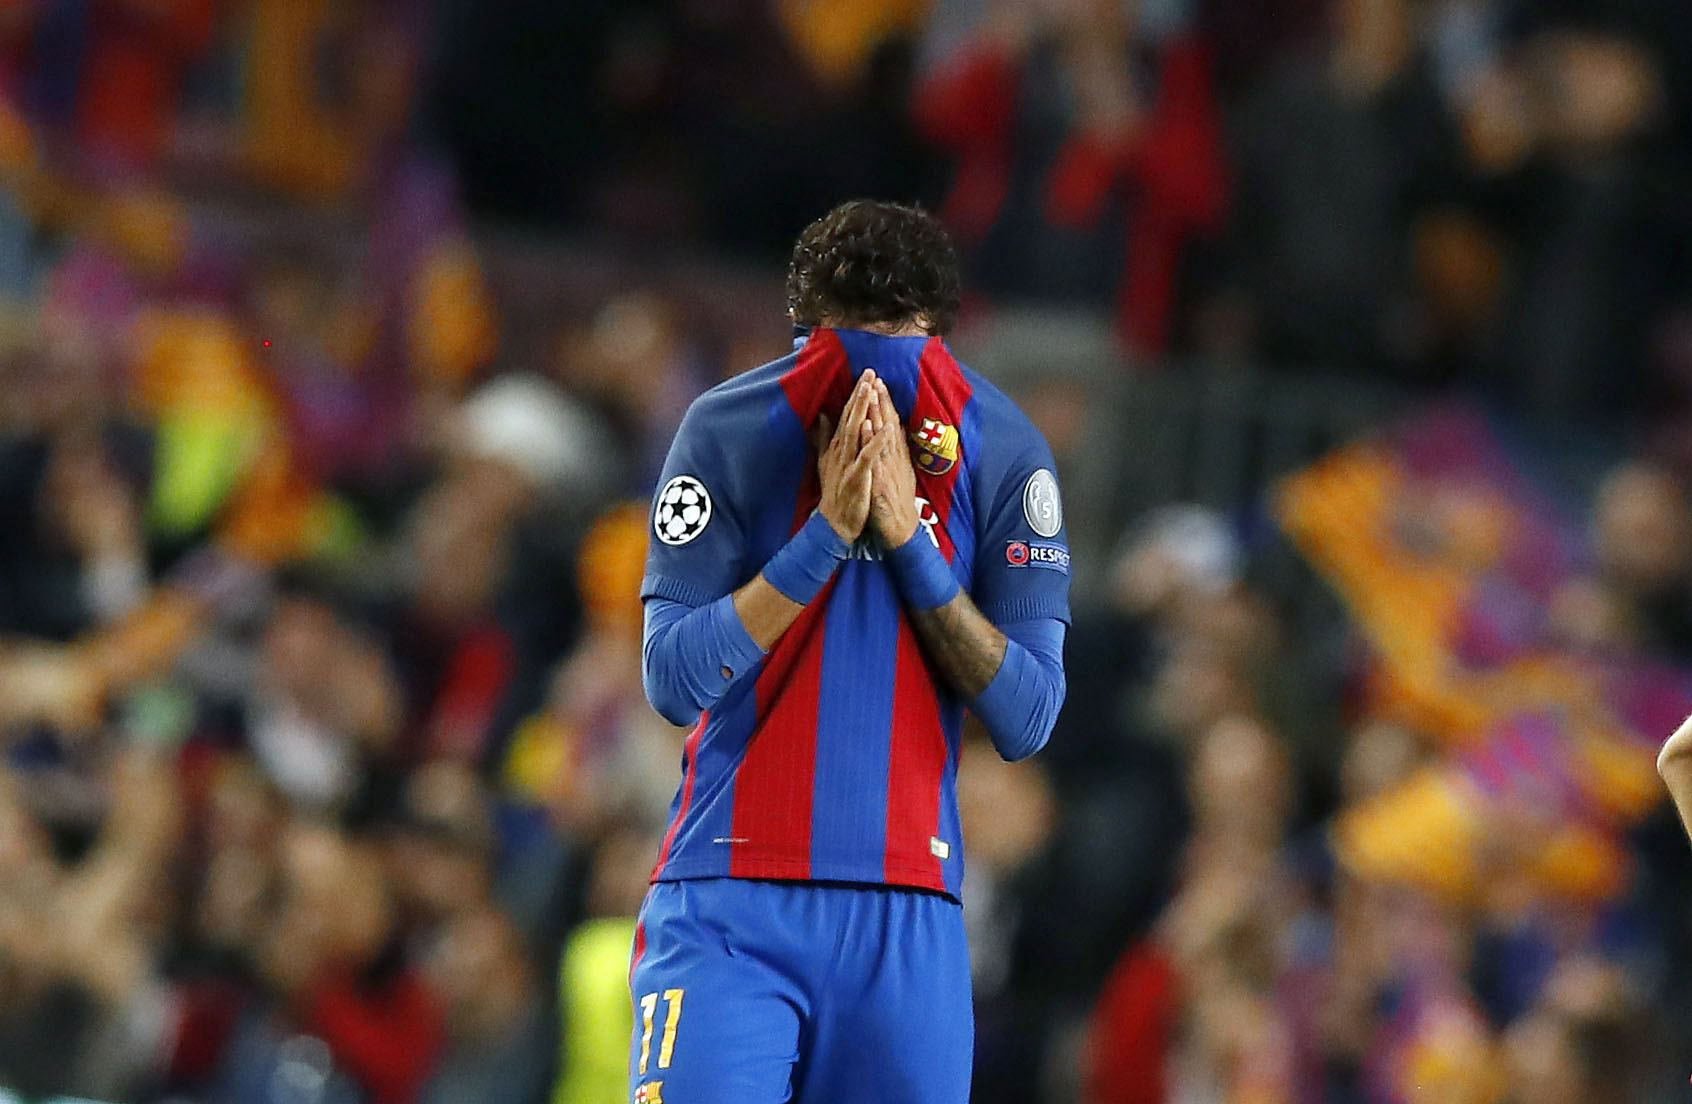 El Barça no se arriesga y jugará sin Neymar